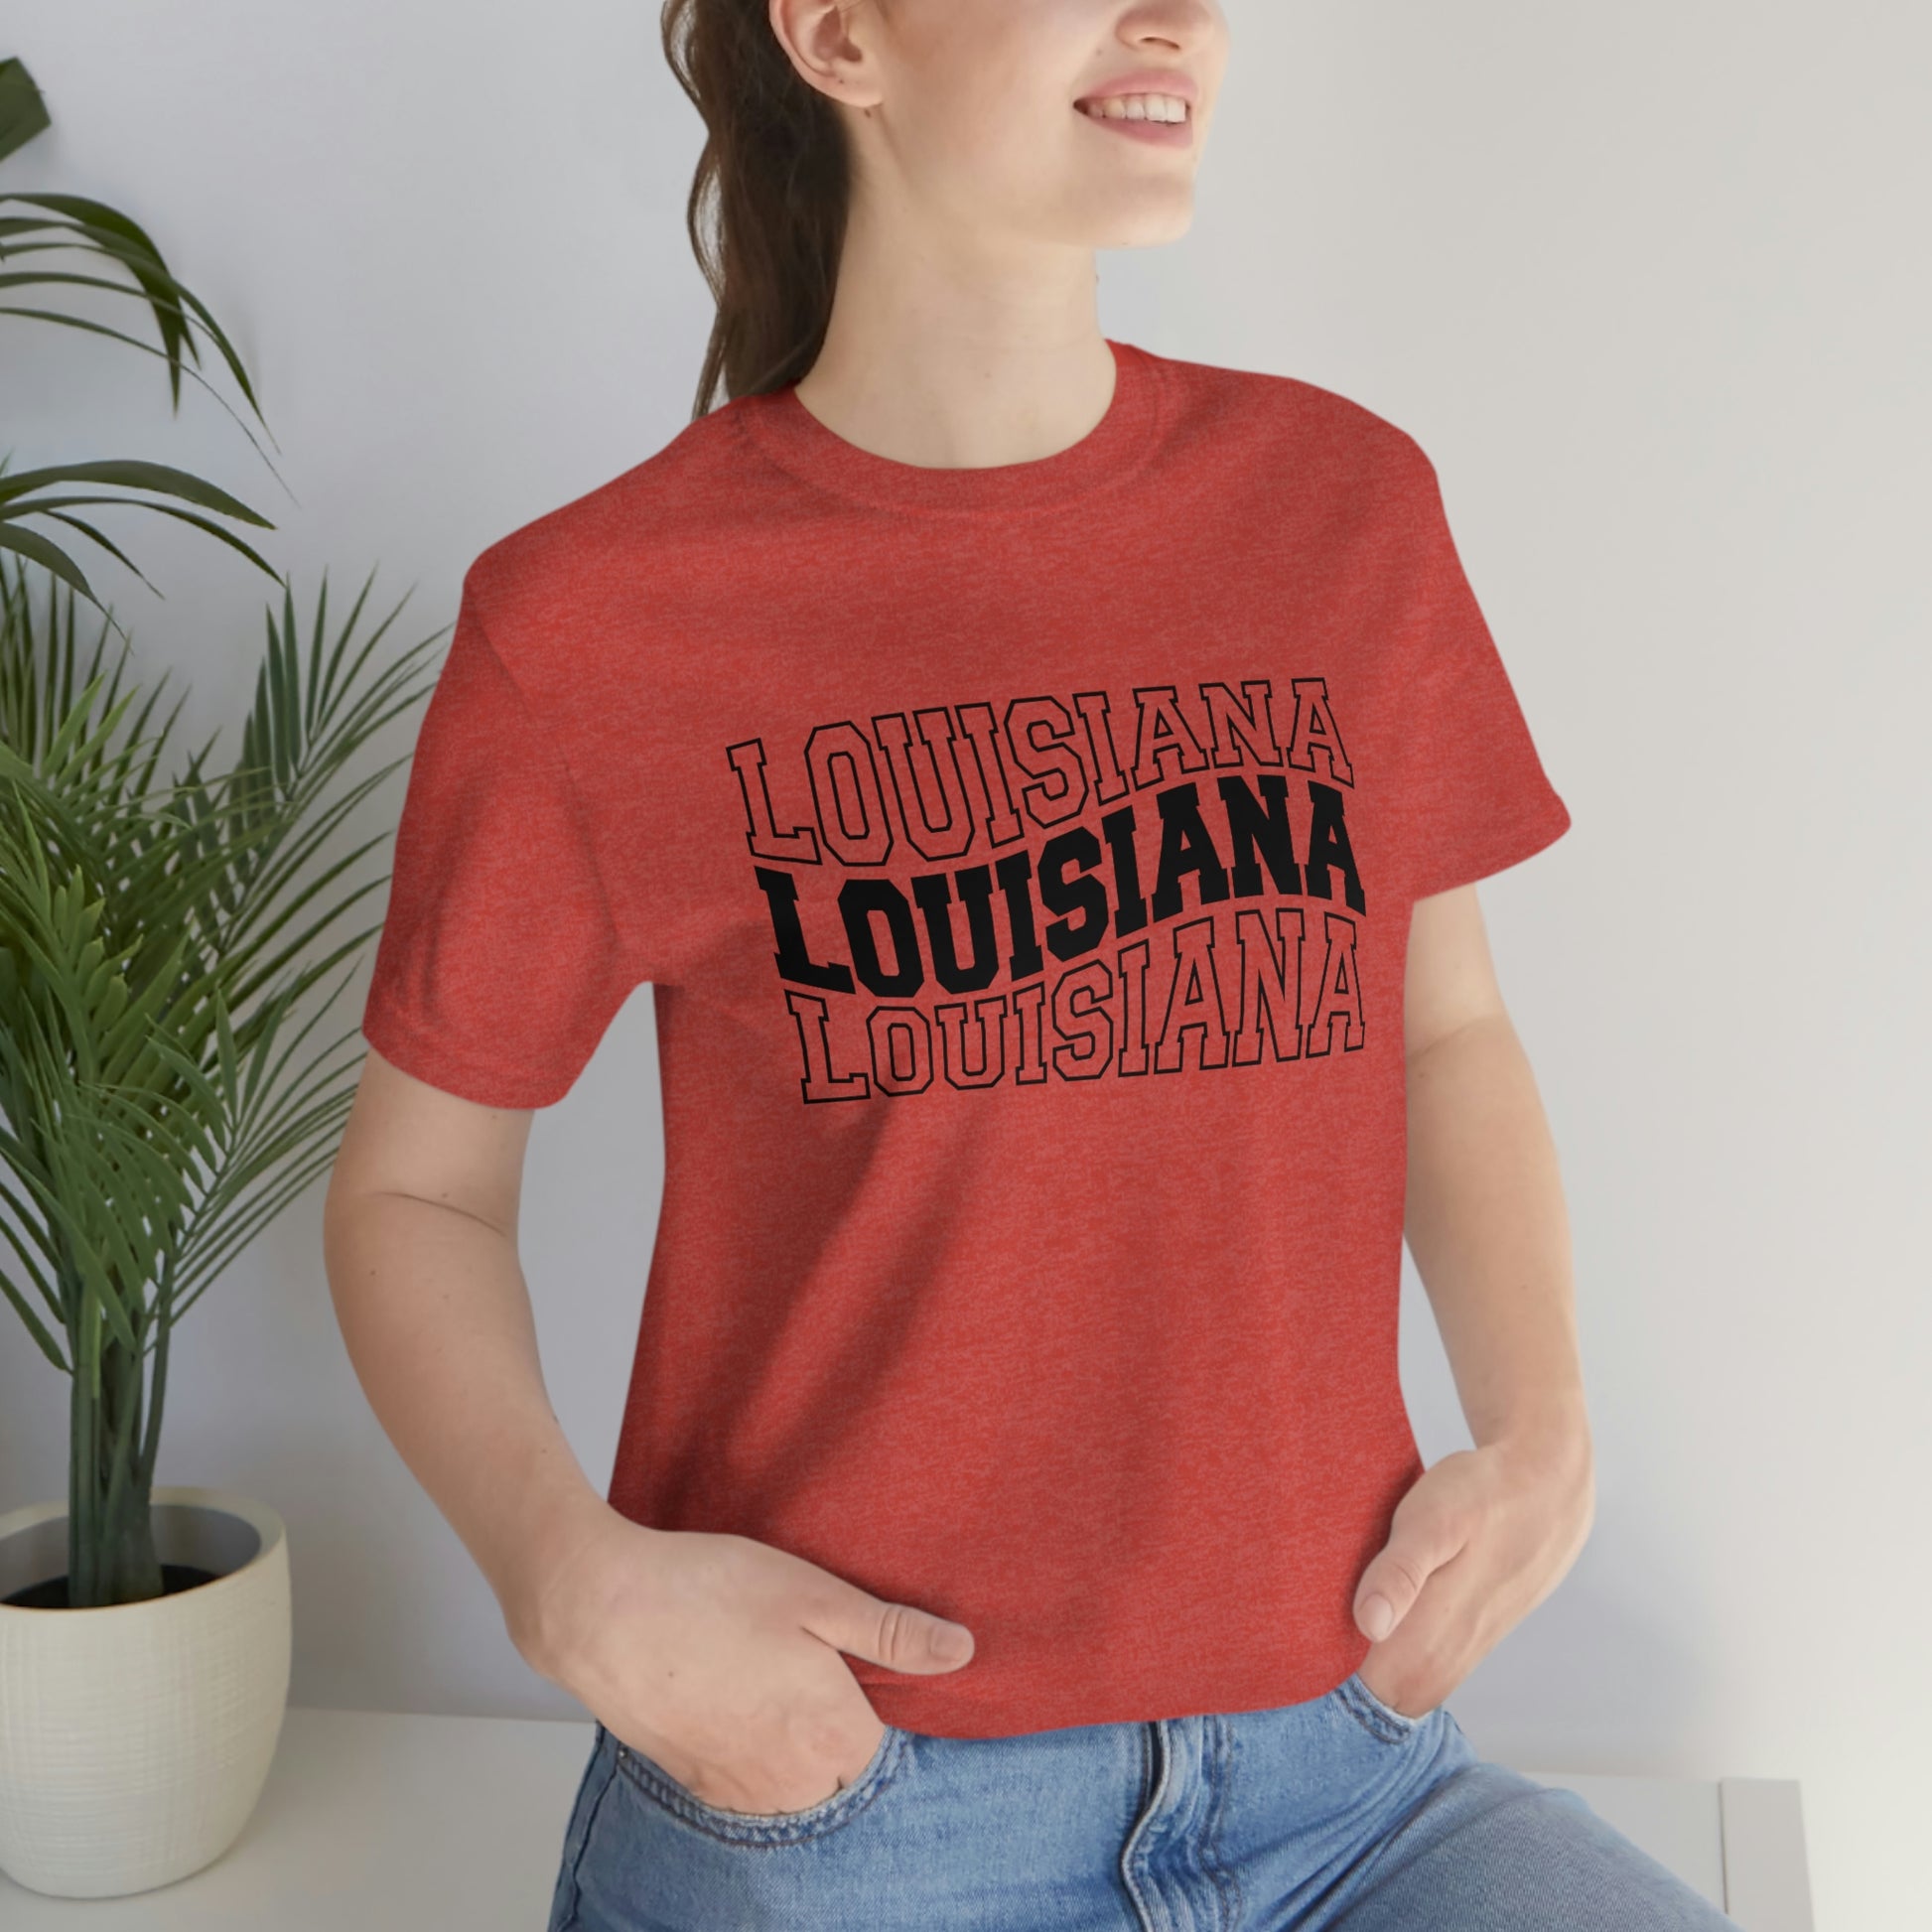 Louisiana Varsity Letters Triple Wavy Short Sleeve T-shirt